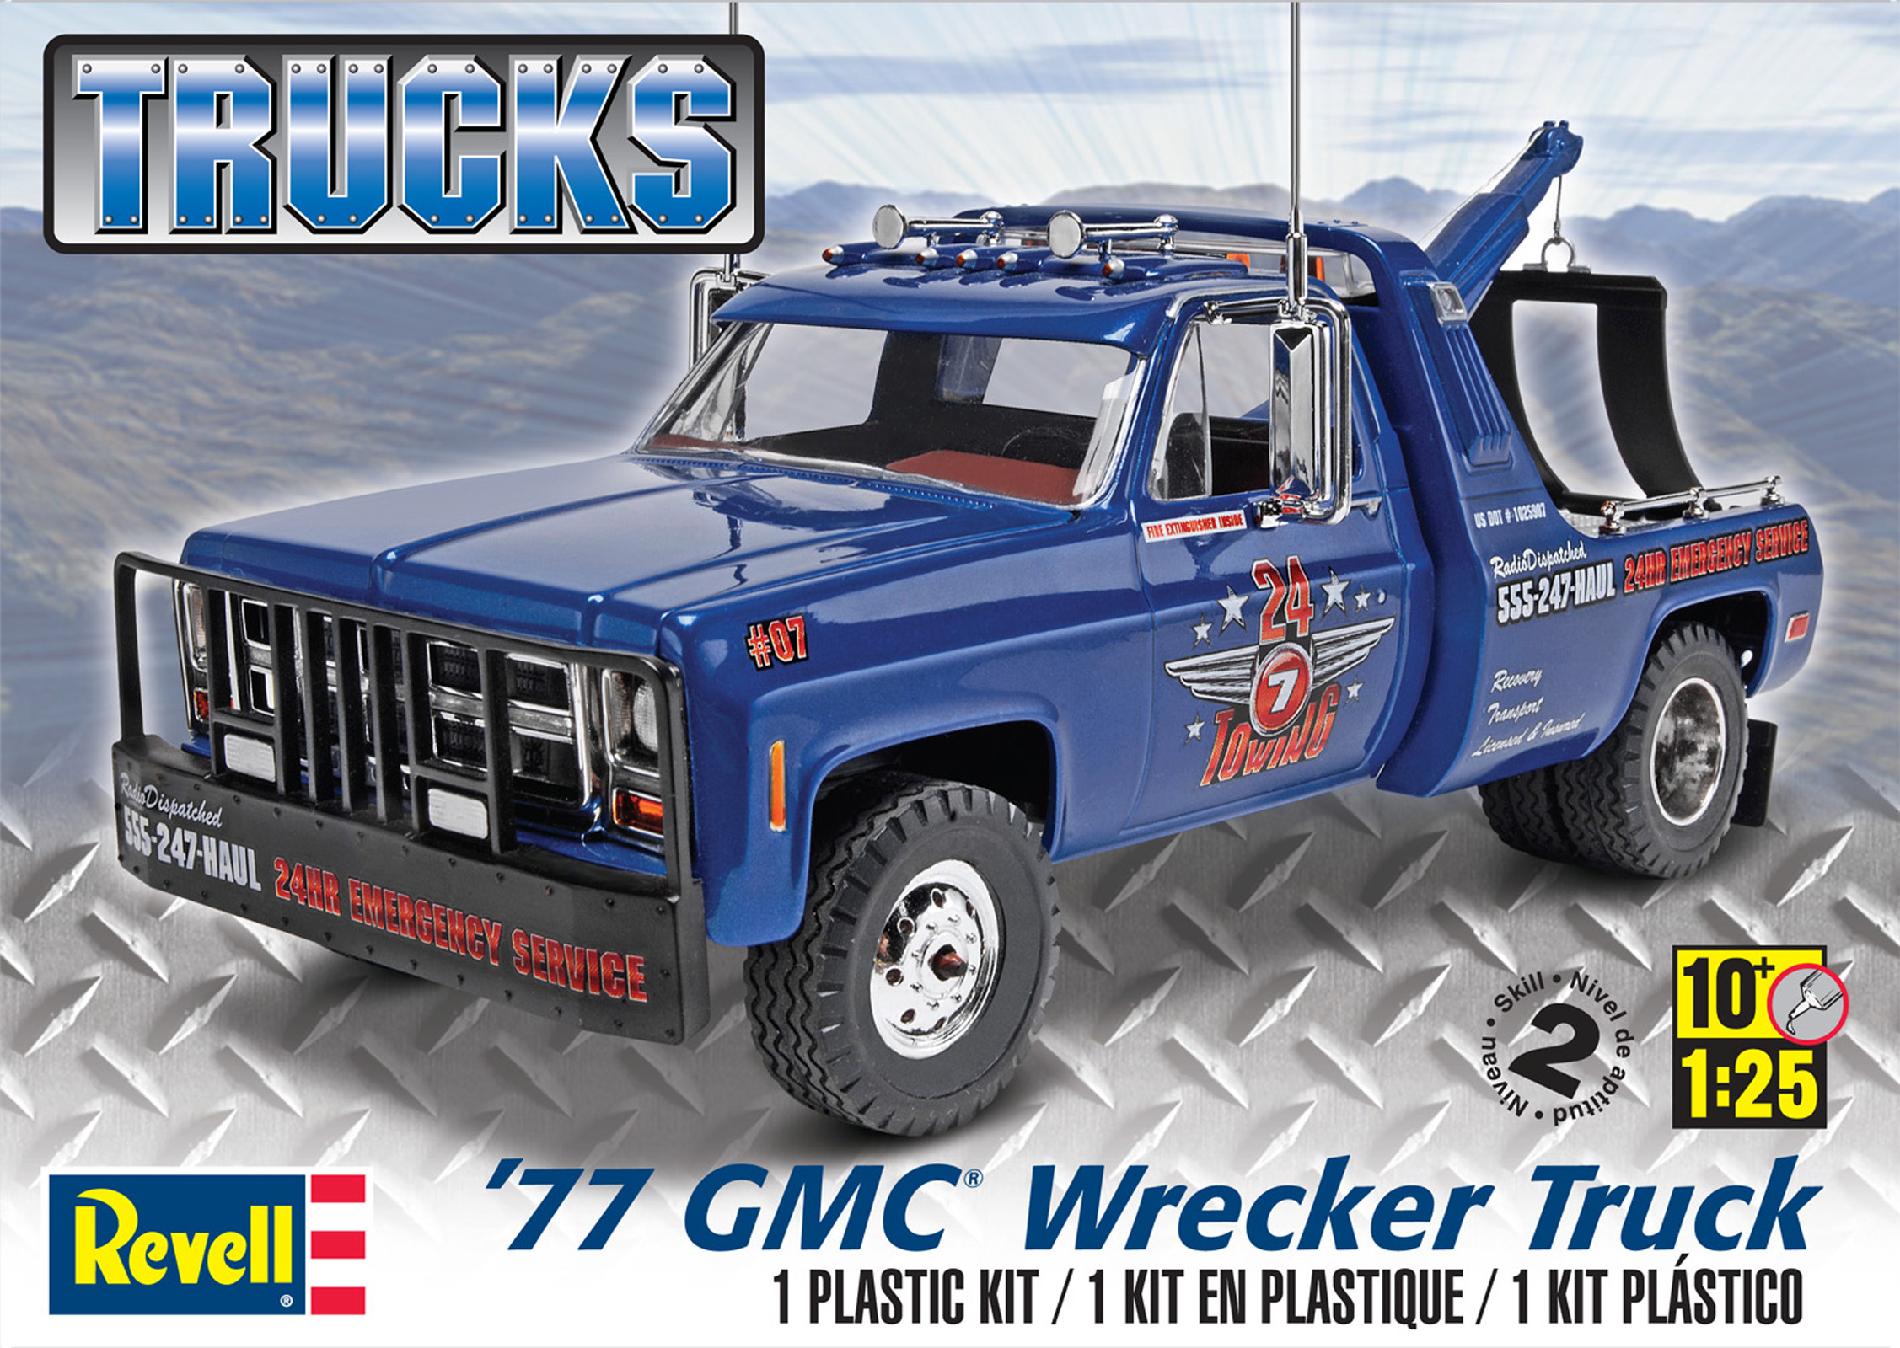 Revell 1:25 Scale '77 GMC Wrecker Truck Model Kit